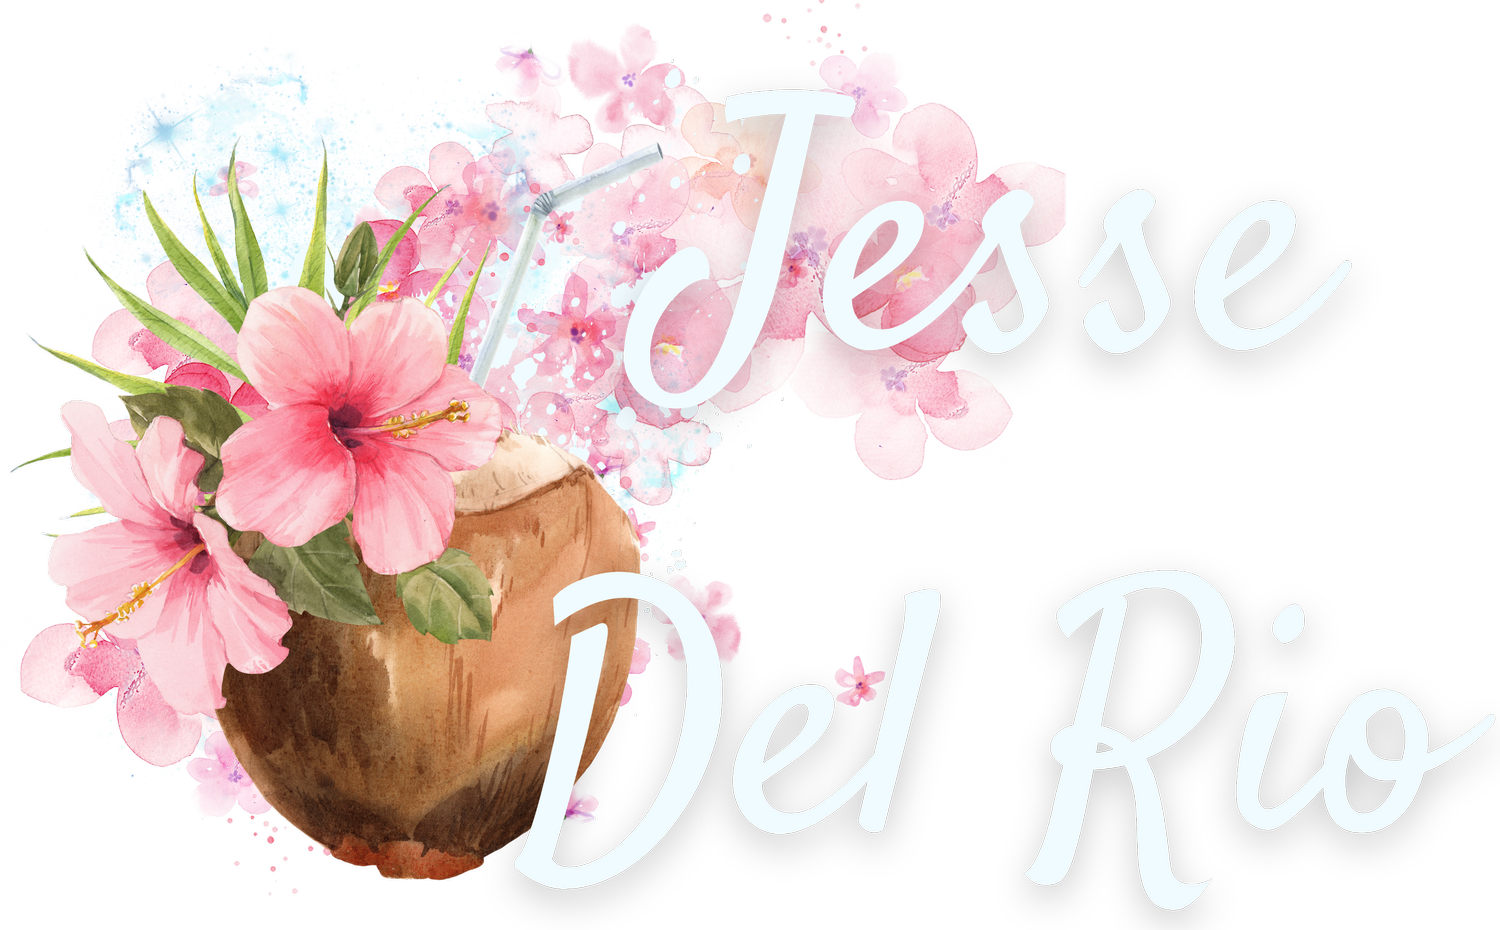 Jesse Del Rio